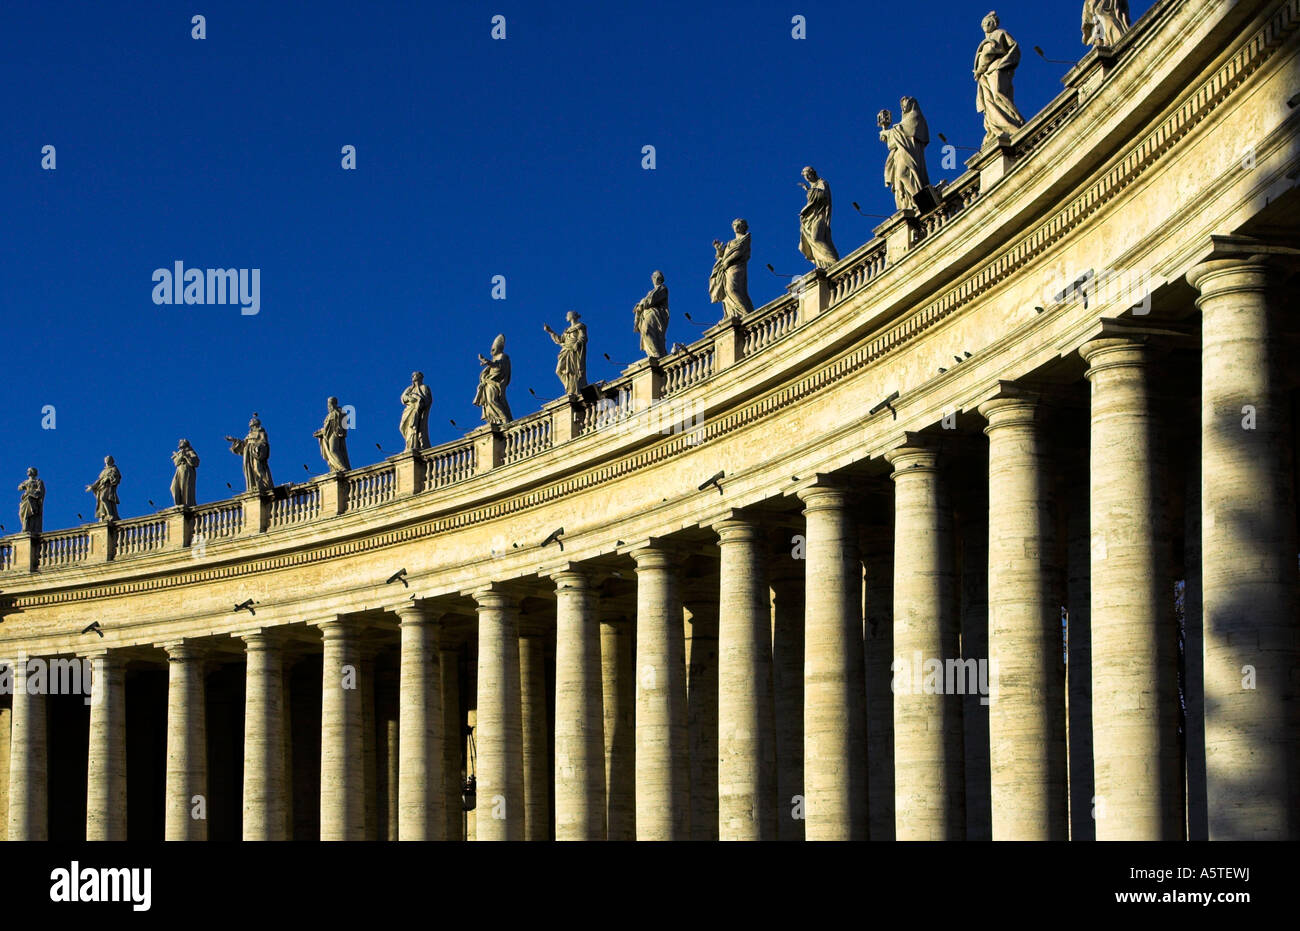 Statuen und Kolonnaden in Sankt Petersplatz, Rom. Piazza San Pietro. Stockfoto